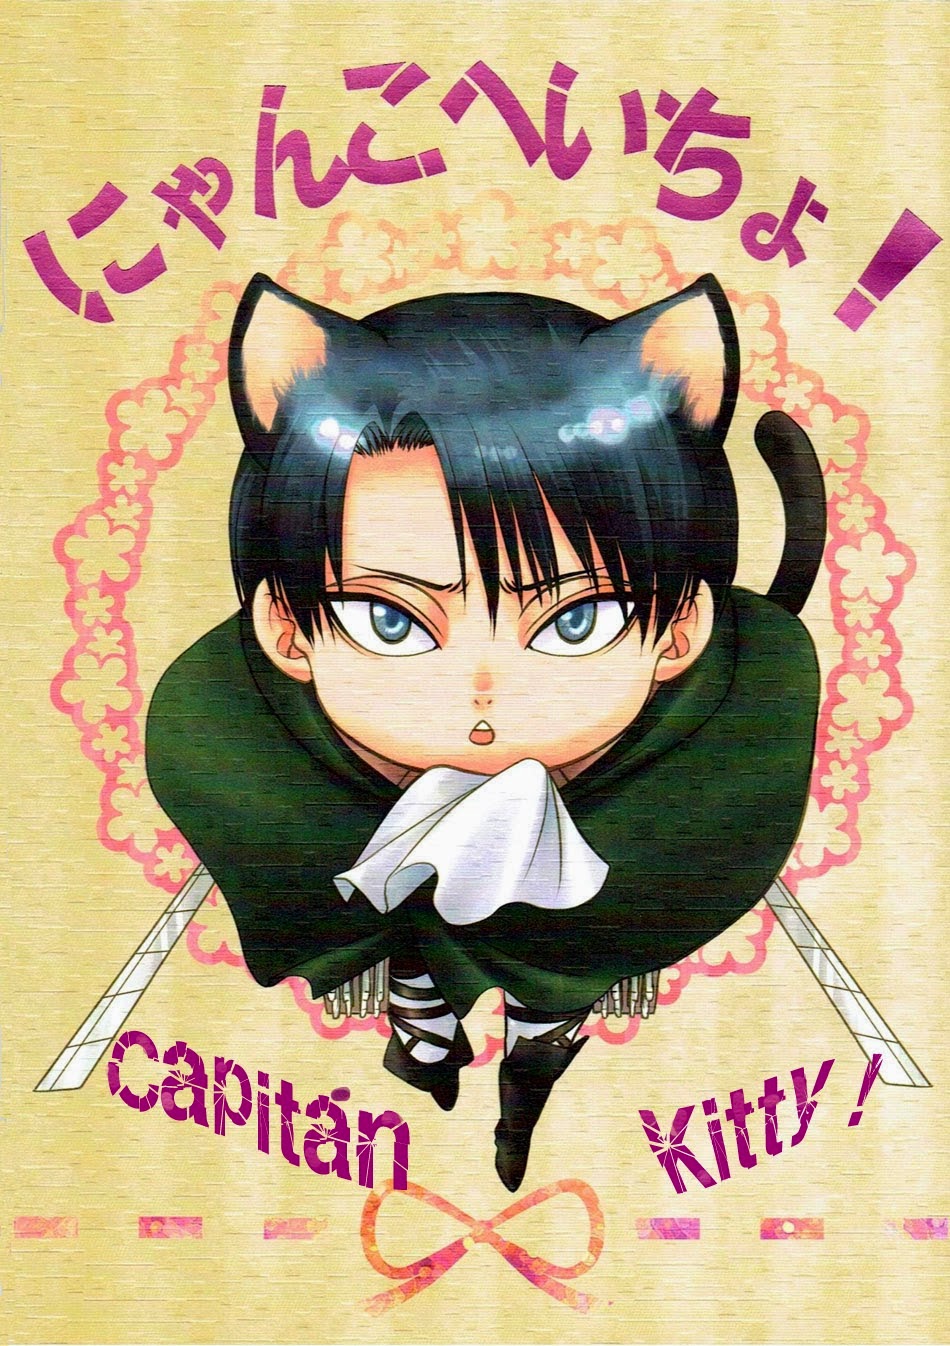 Capitán Kitty ()